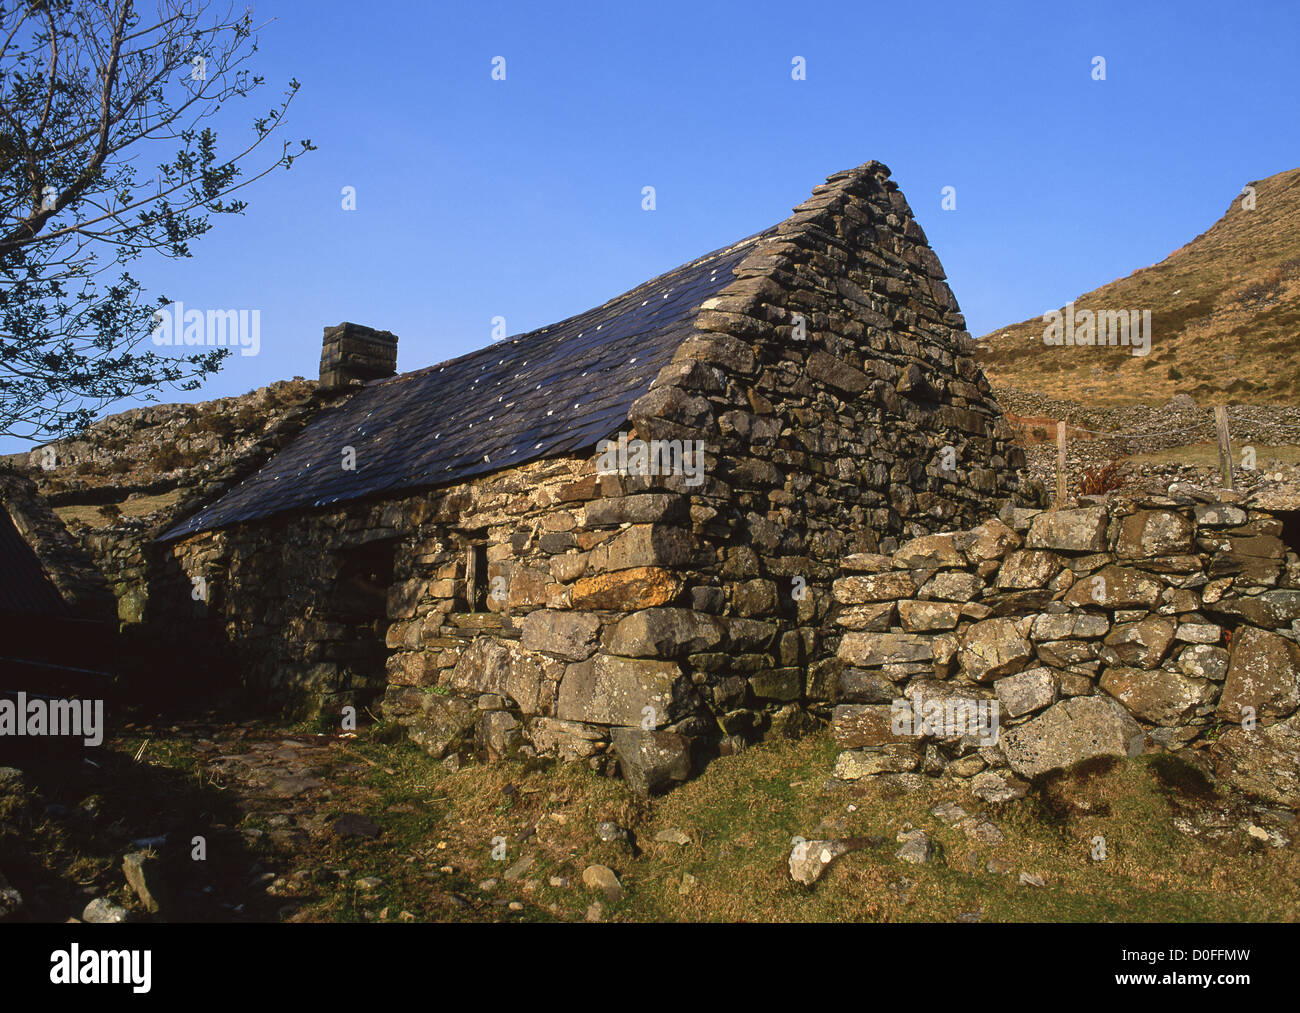 Traditionellen alten walisischen Stein Hütte (Bwthyn) in der Nähe von Arthog Gwynedd Vernacular Architektur Snowdonia National Park Mid Wales UK Stockfoto